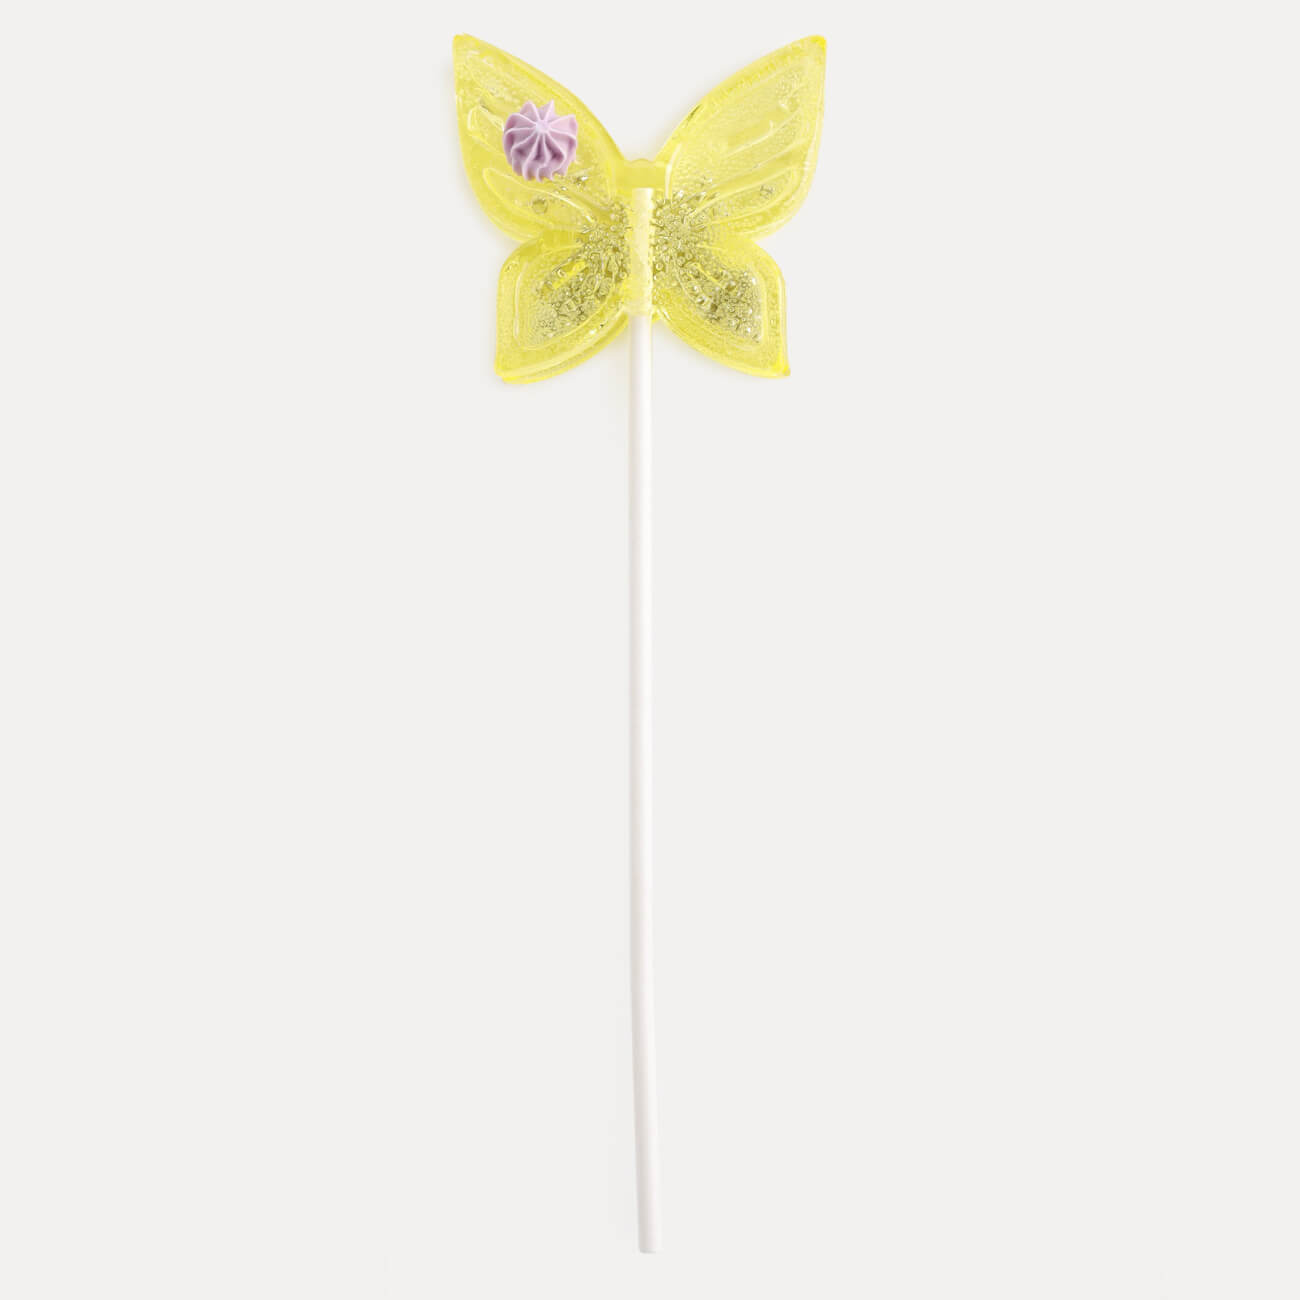 Леденец, 30 гр, погремушка, на палочке, изомальт, желтый, Бабочка, Butterfly погремушка бубен